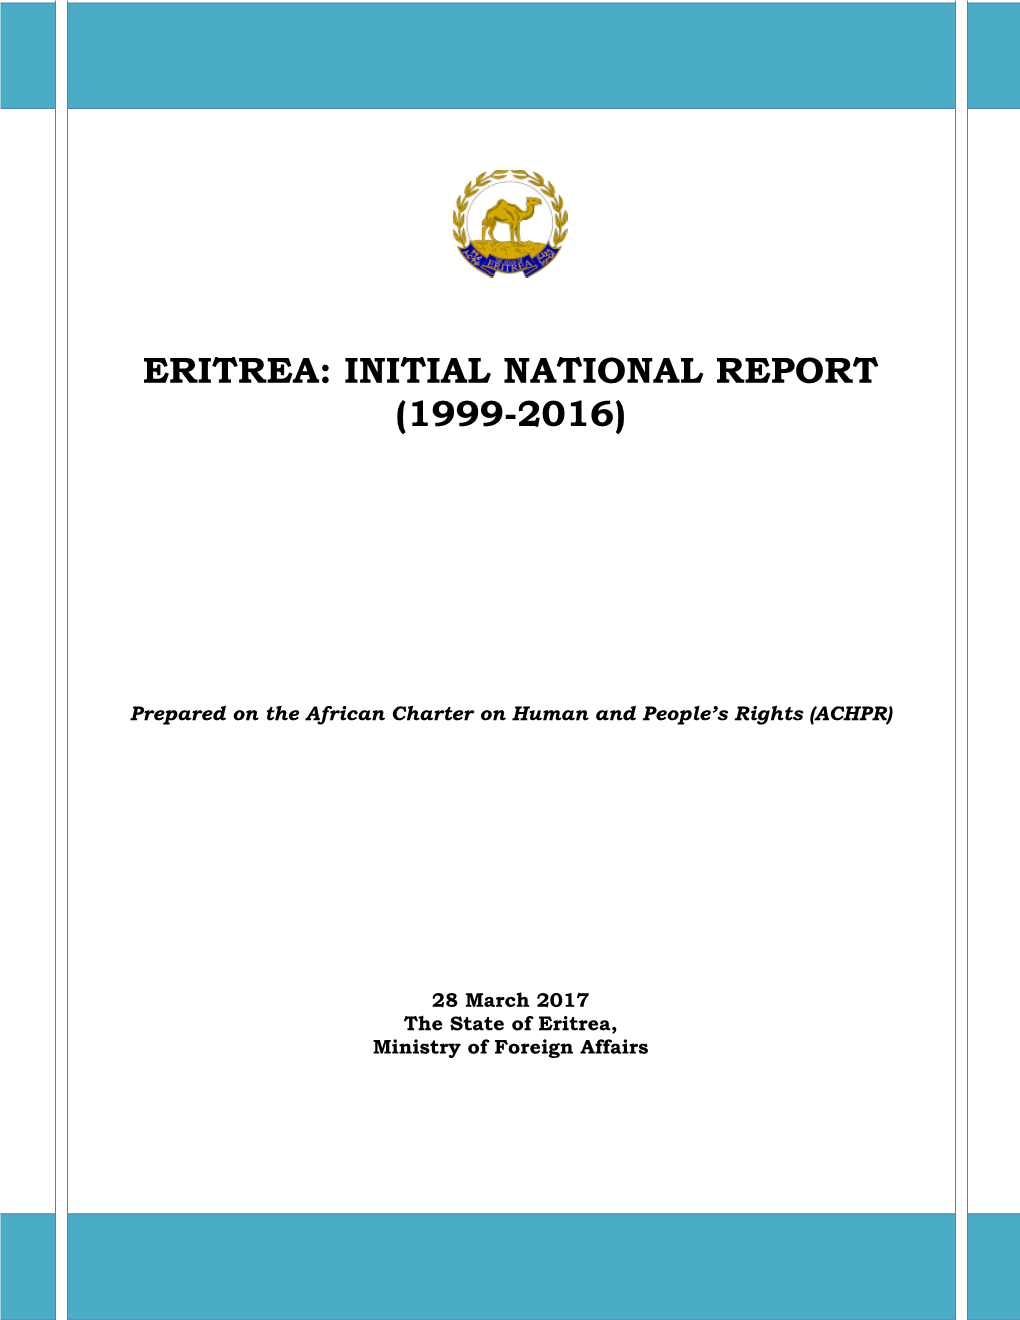 Eritrea: Initial National Report (1999-2016)